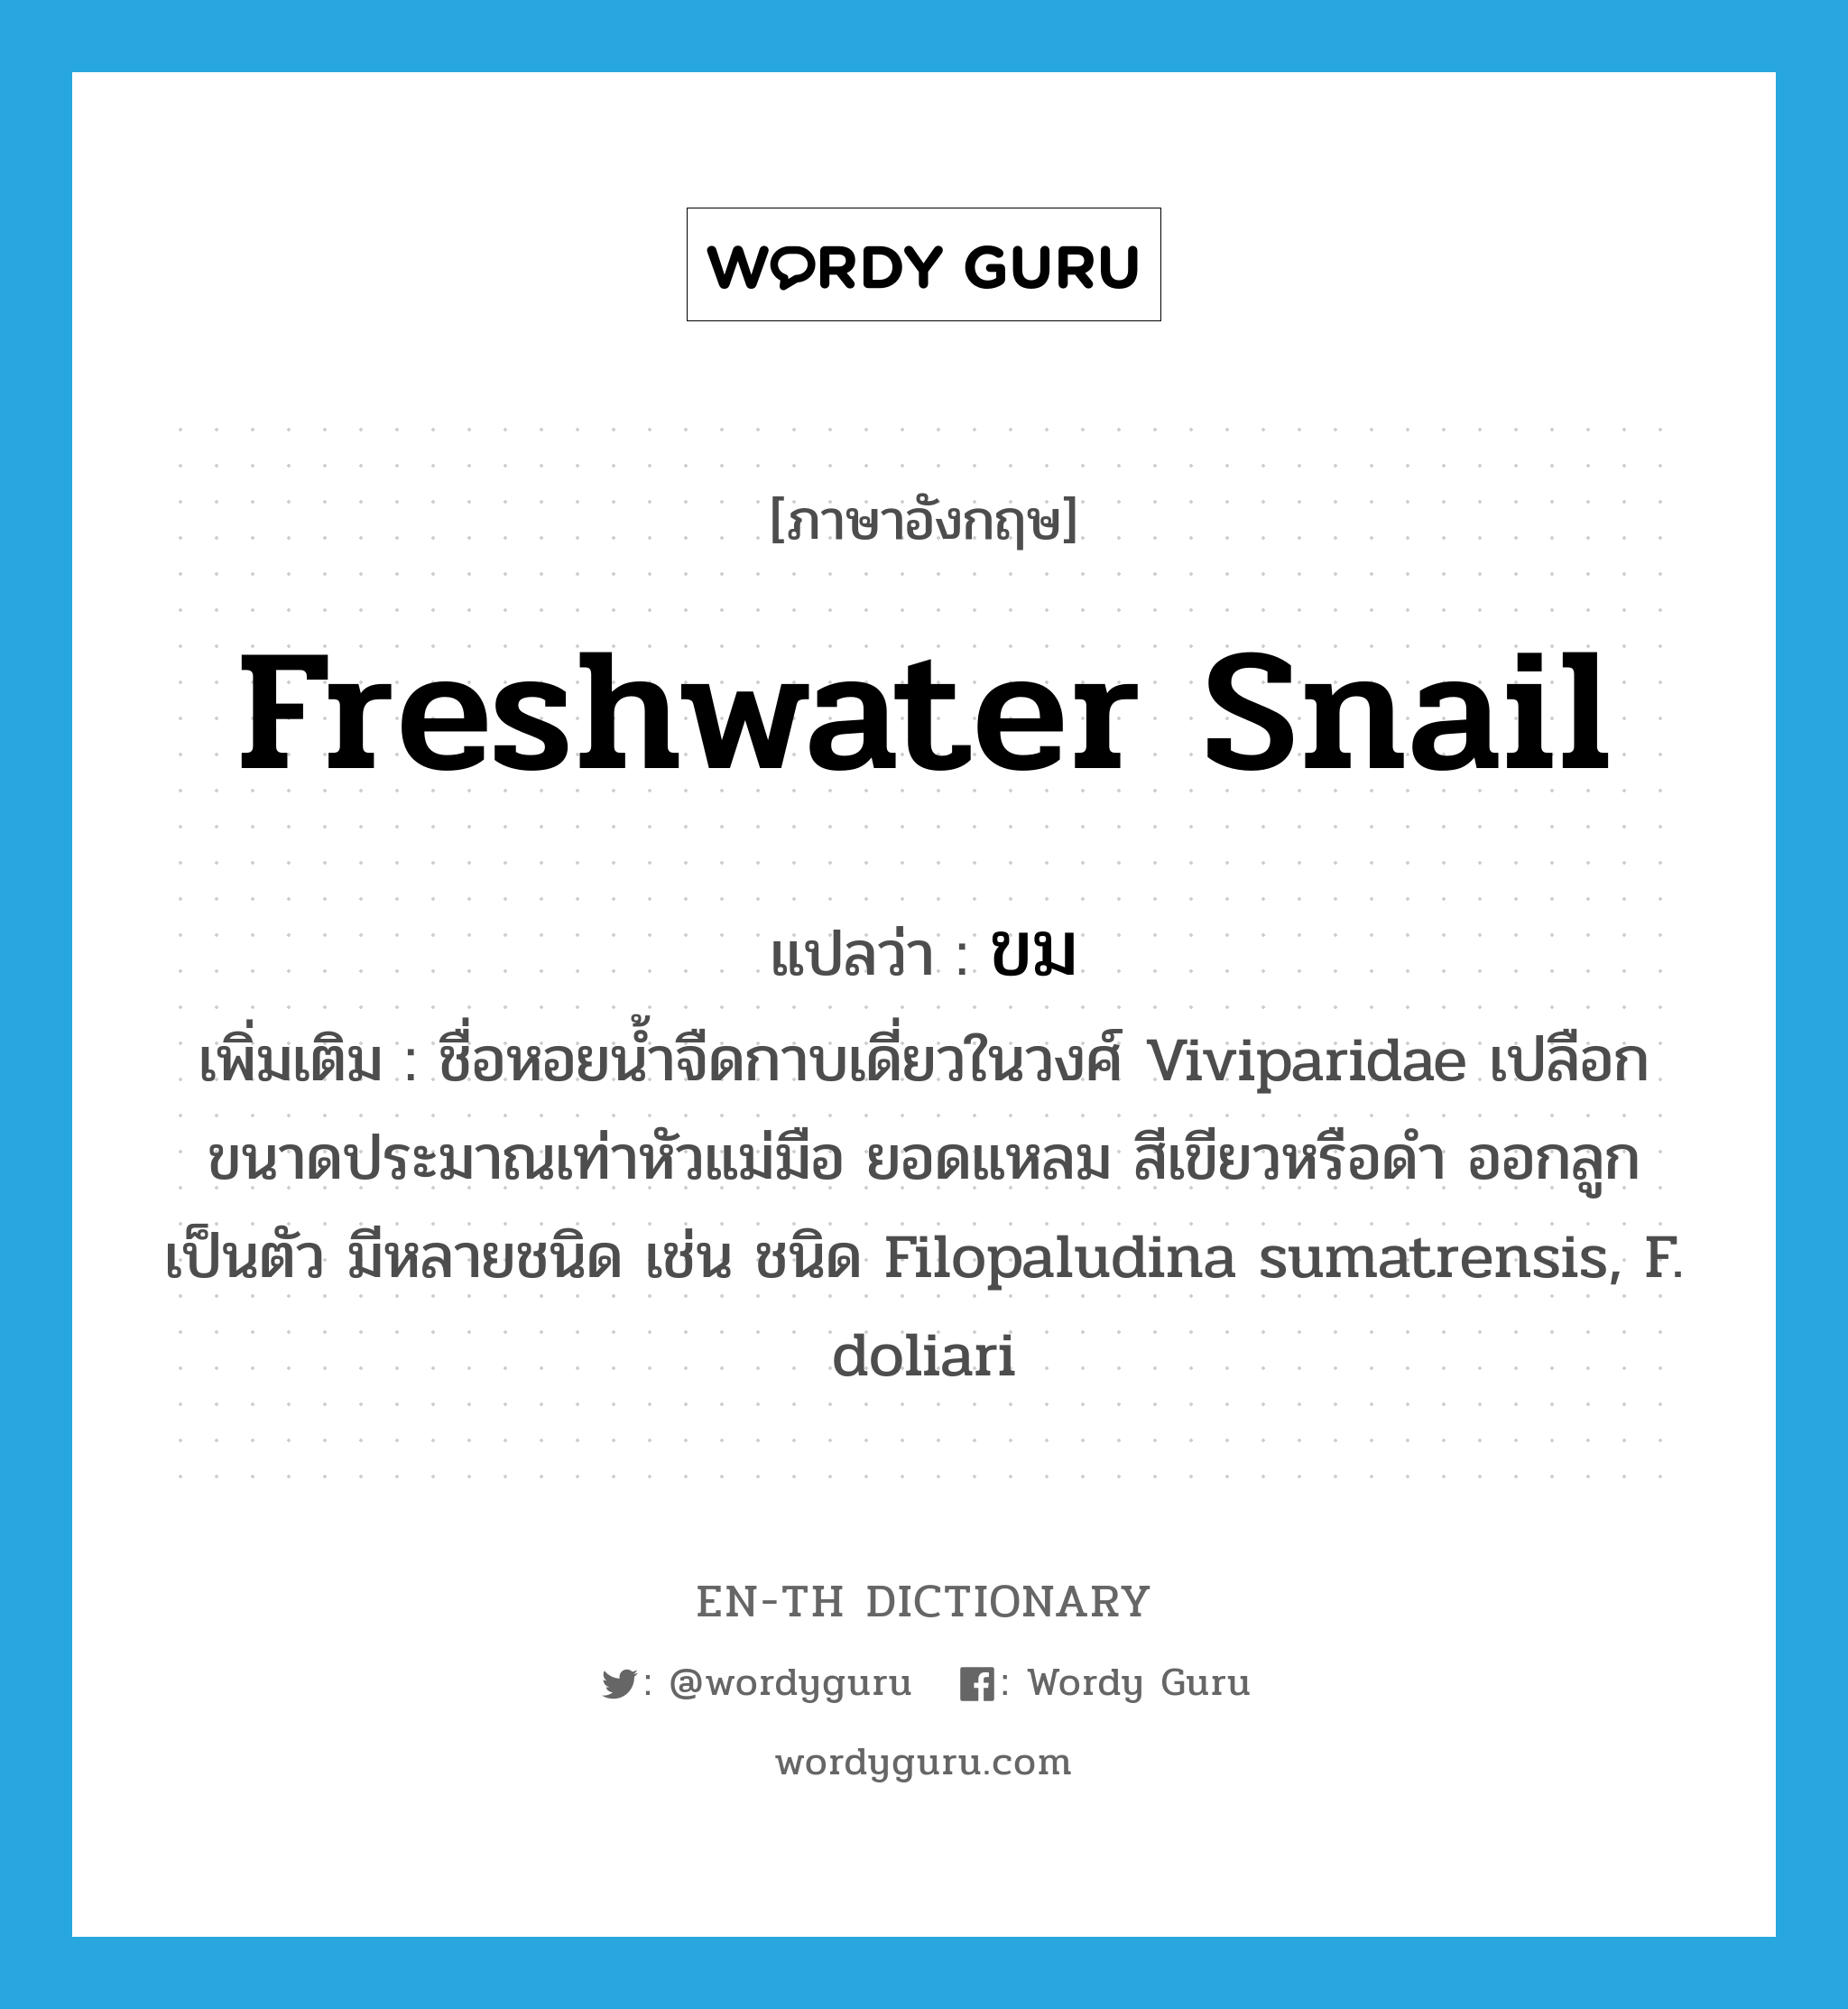 ขม ภาษาอังกฤษ?, คำศัพท์ภาษาอังกฤษ ขม แปลว่า freshwater snail ประเภท N เพิ่มเติม ชื่อหอยน้ำจืดกาบเดี่ยวในวงศ์ Viviparidae เปลือกขนาดประมาณเท่าหัวแม่มือ ยอดแหลม สีเขียวหรือดำ ออกลูกเป็นตัว มีหลายชนิด เช่น ชนิด Filopaludina sumatrensis, F. doliari หมวด N